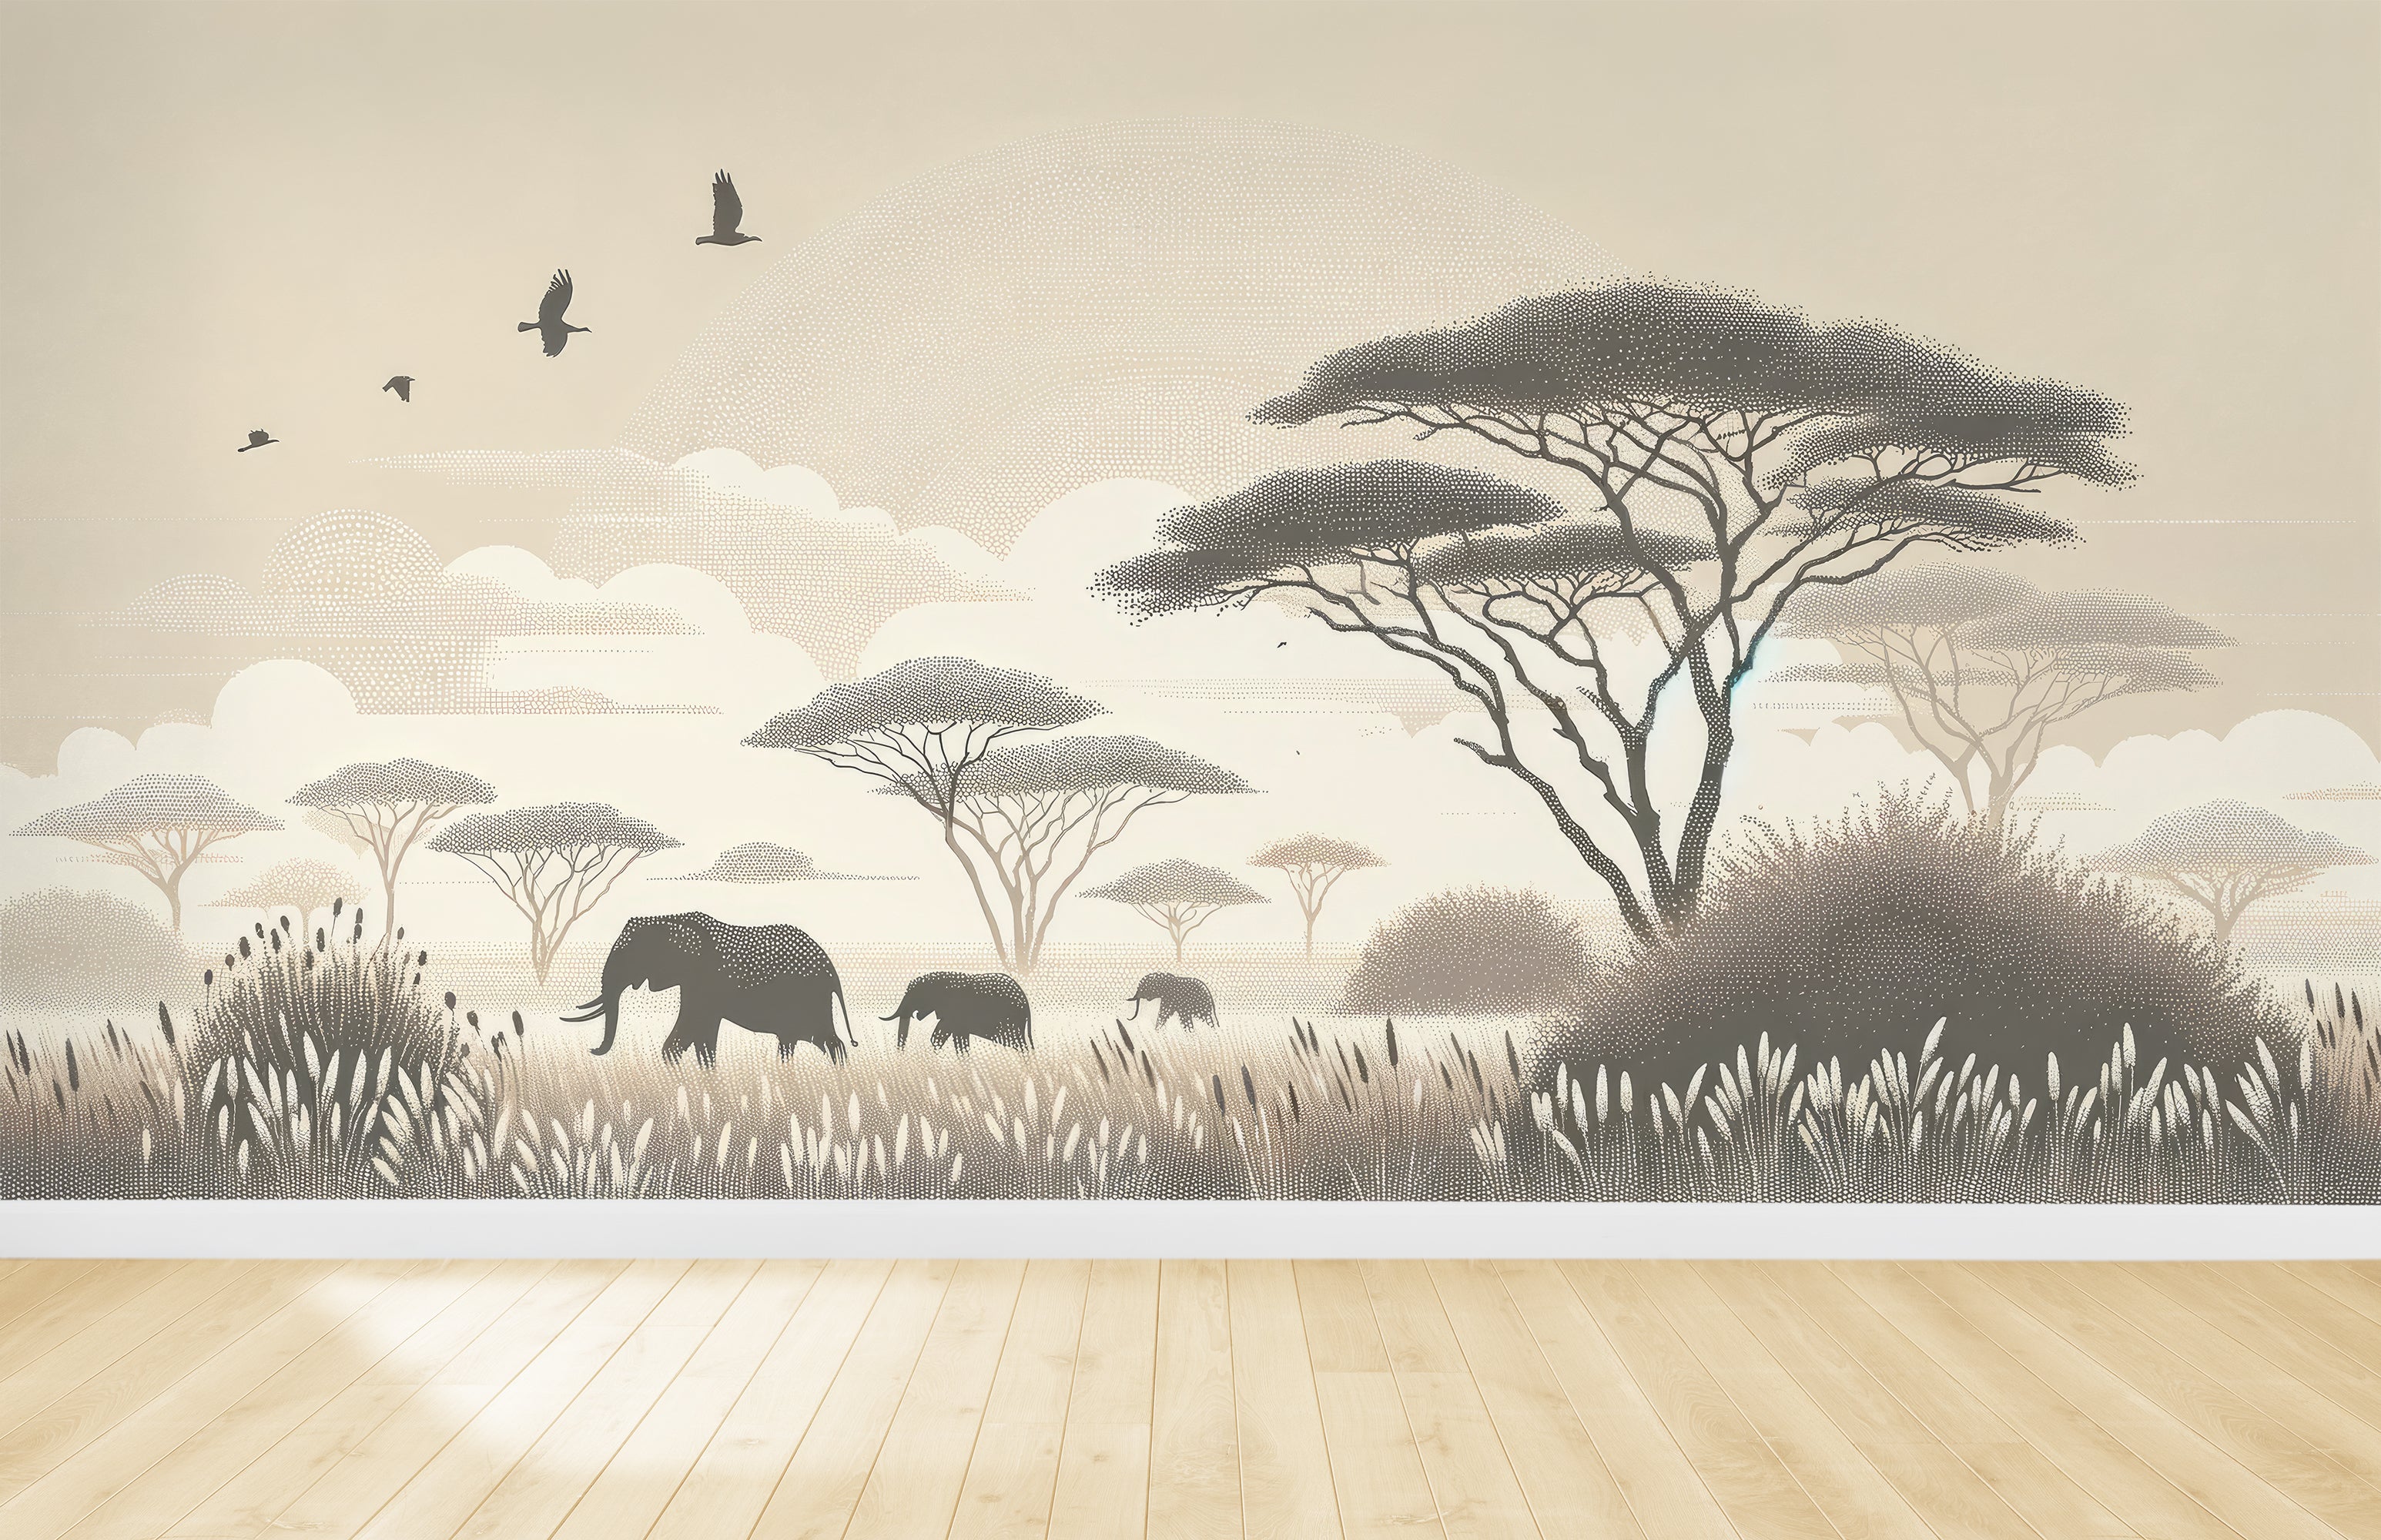 Safari Africain – Éléphants et Acacias